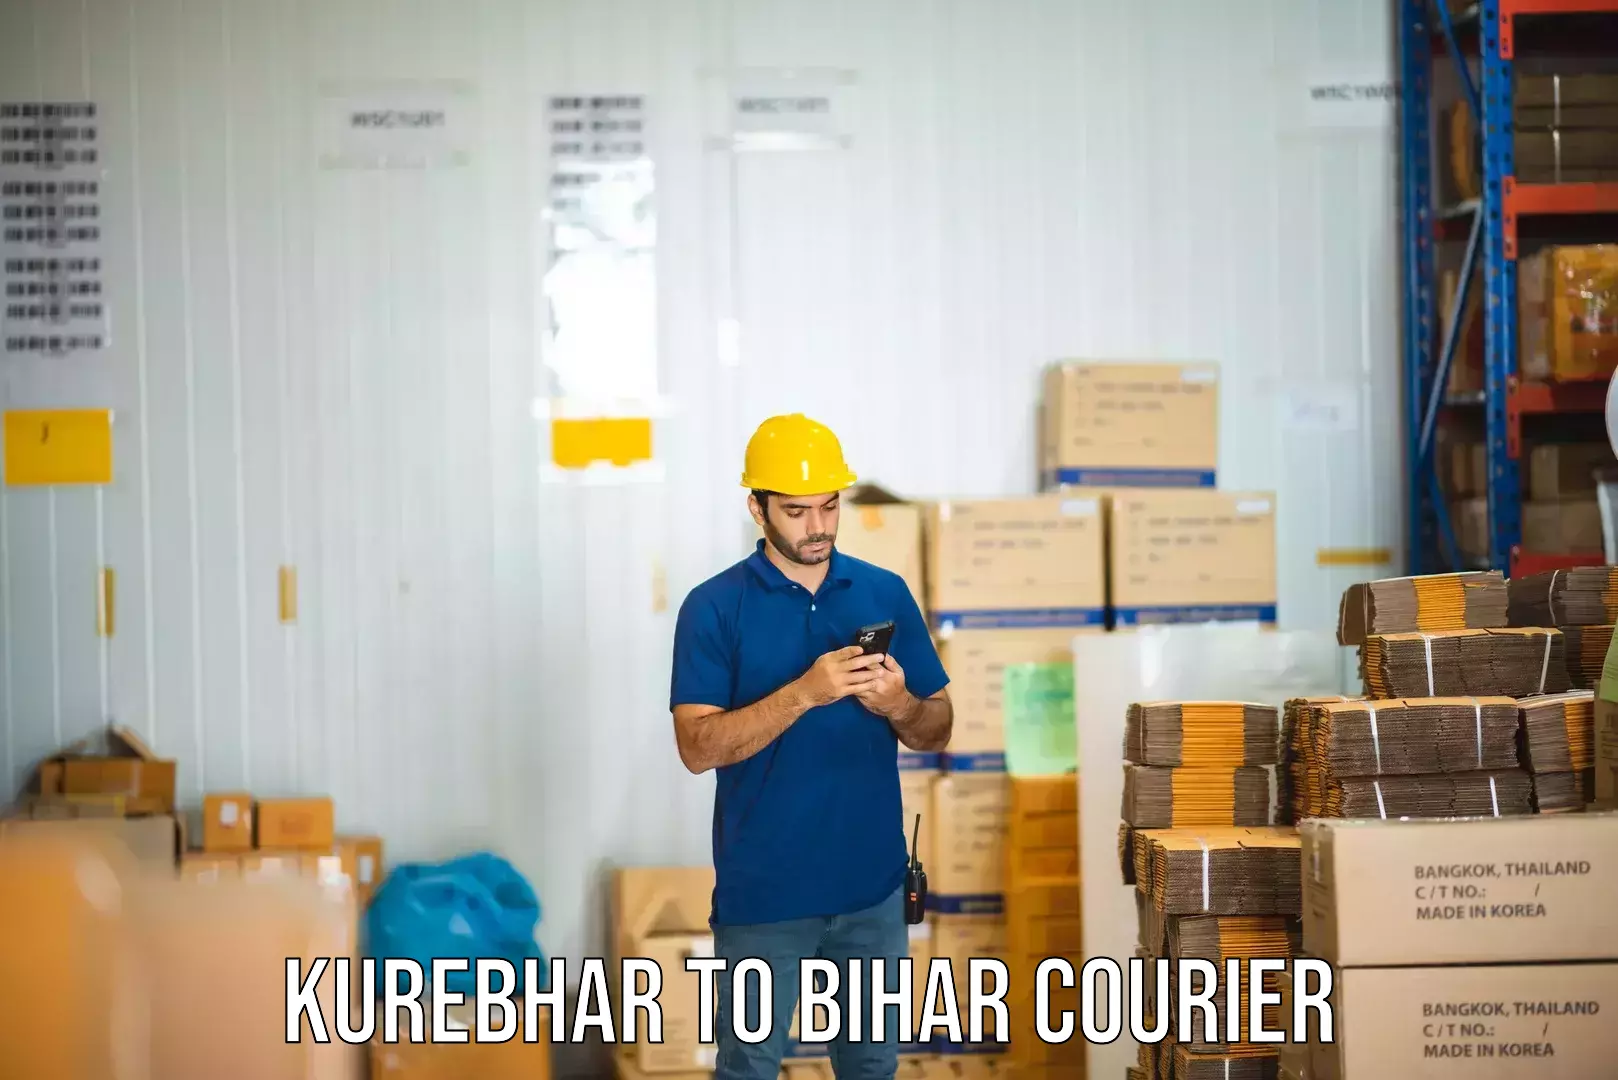 Express courier capabilities in Kurebhar to Bihar